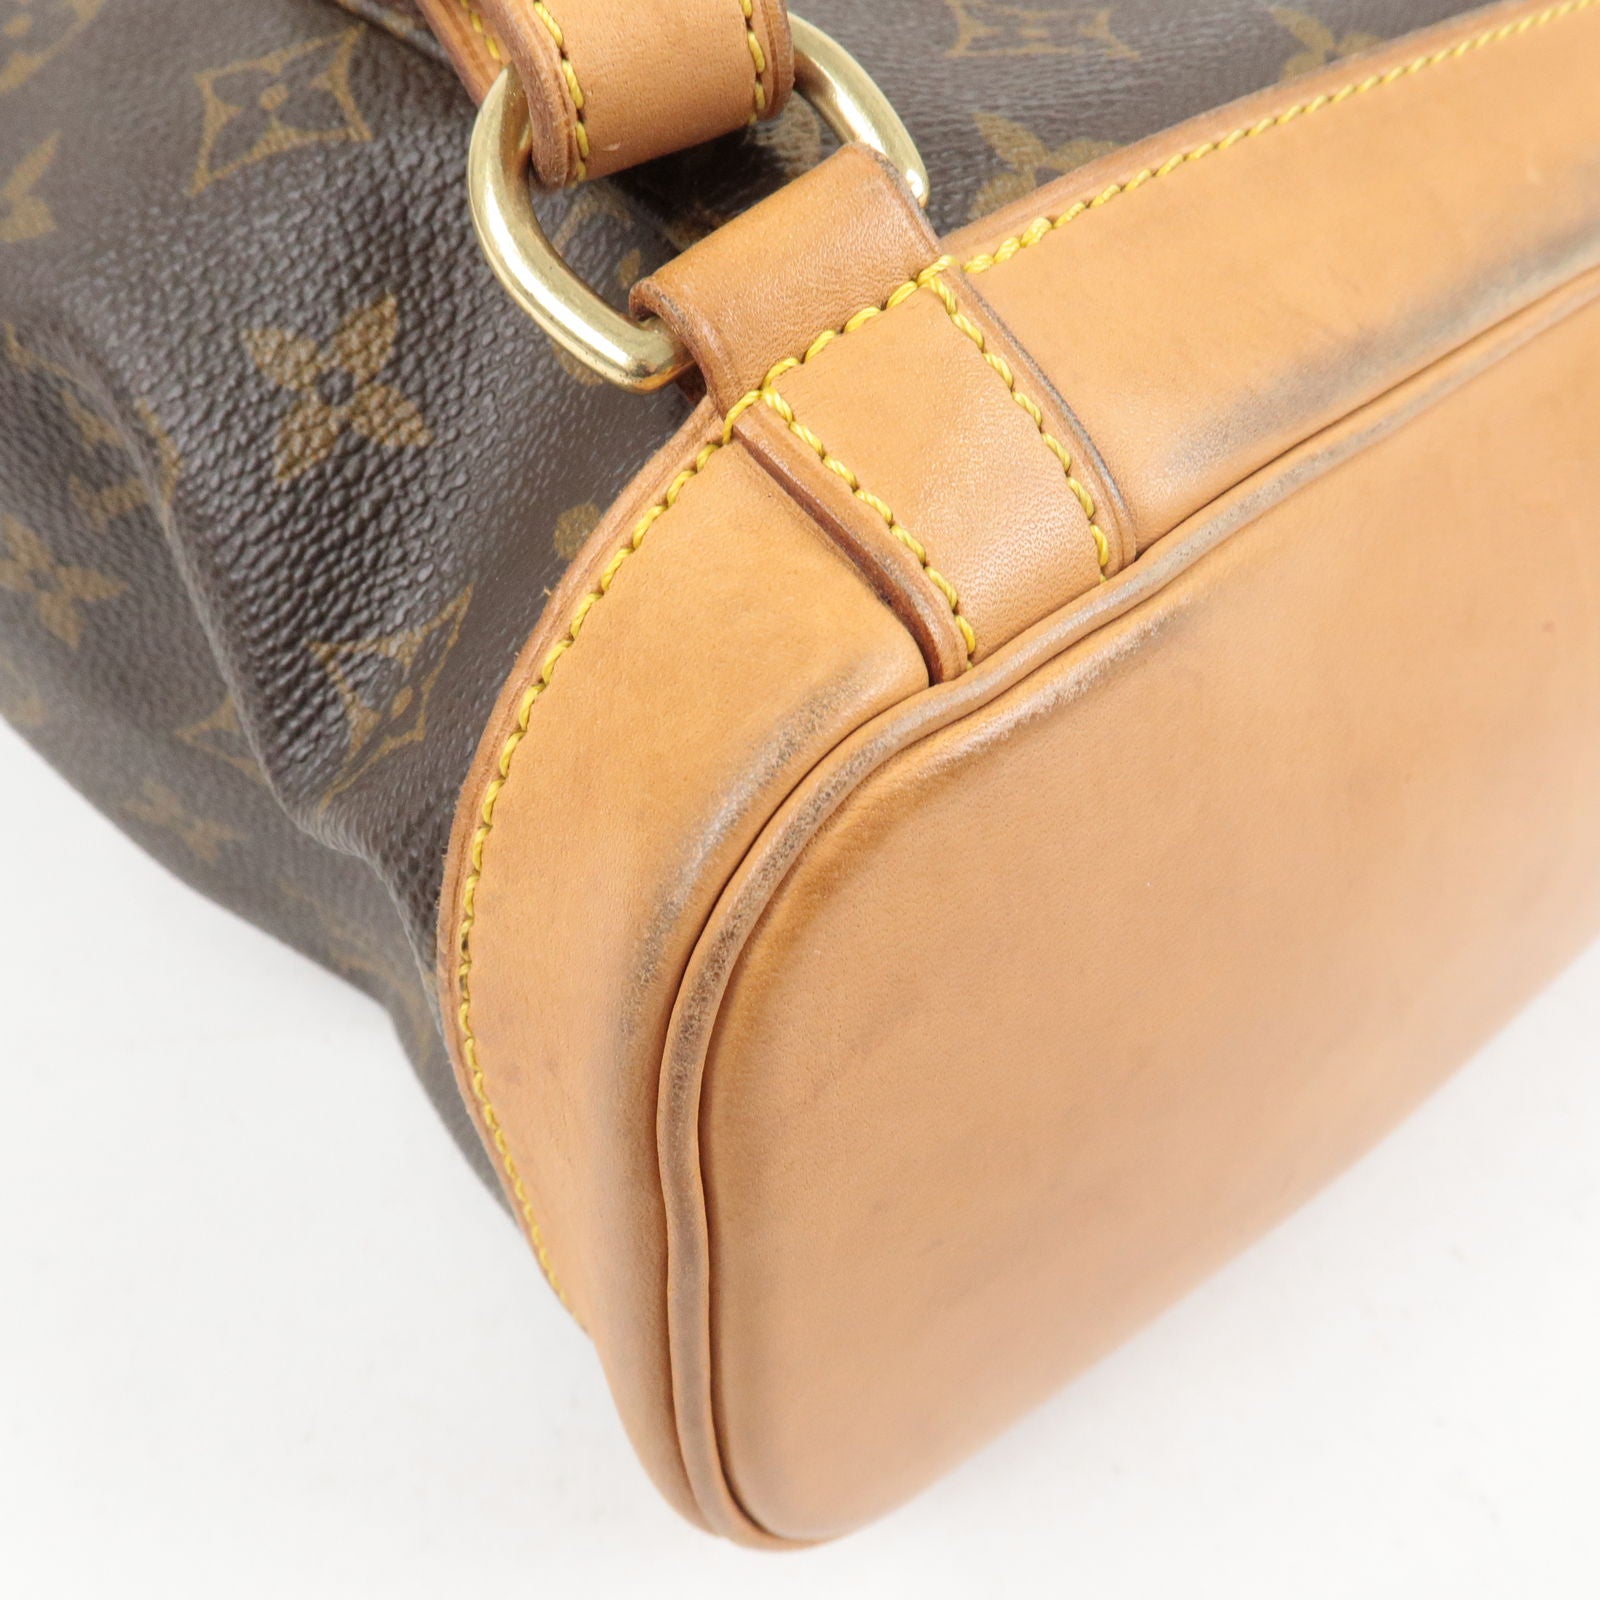 Pack - Back - Louis - M51136 – dct - Monogram - Vuitton - Bag